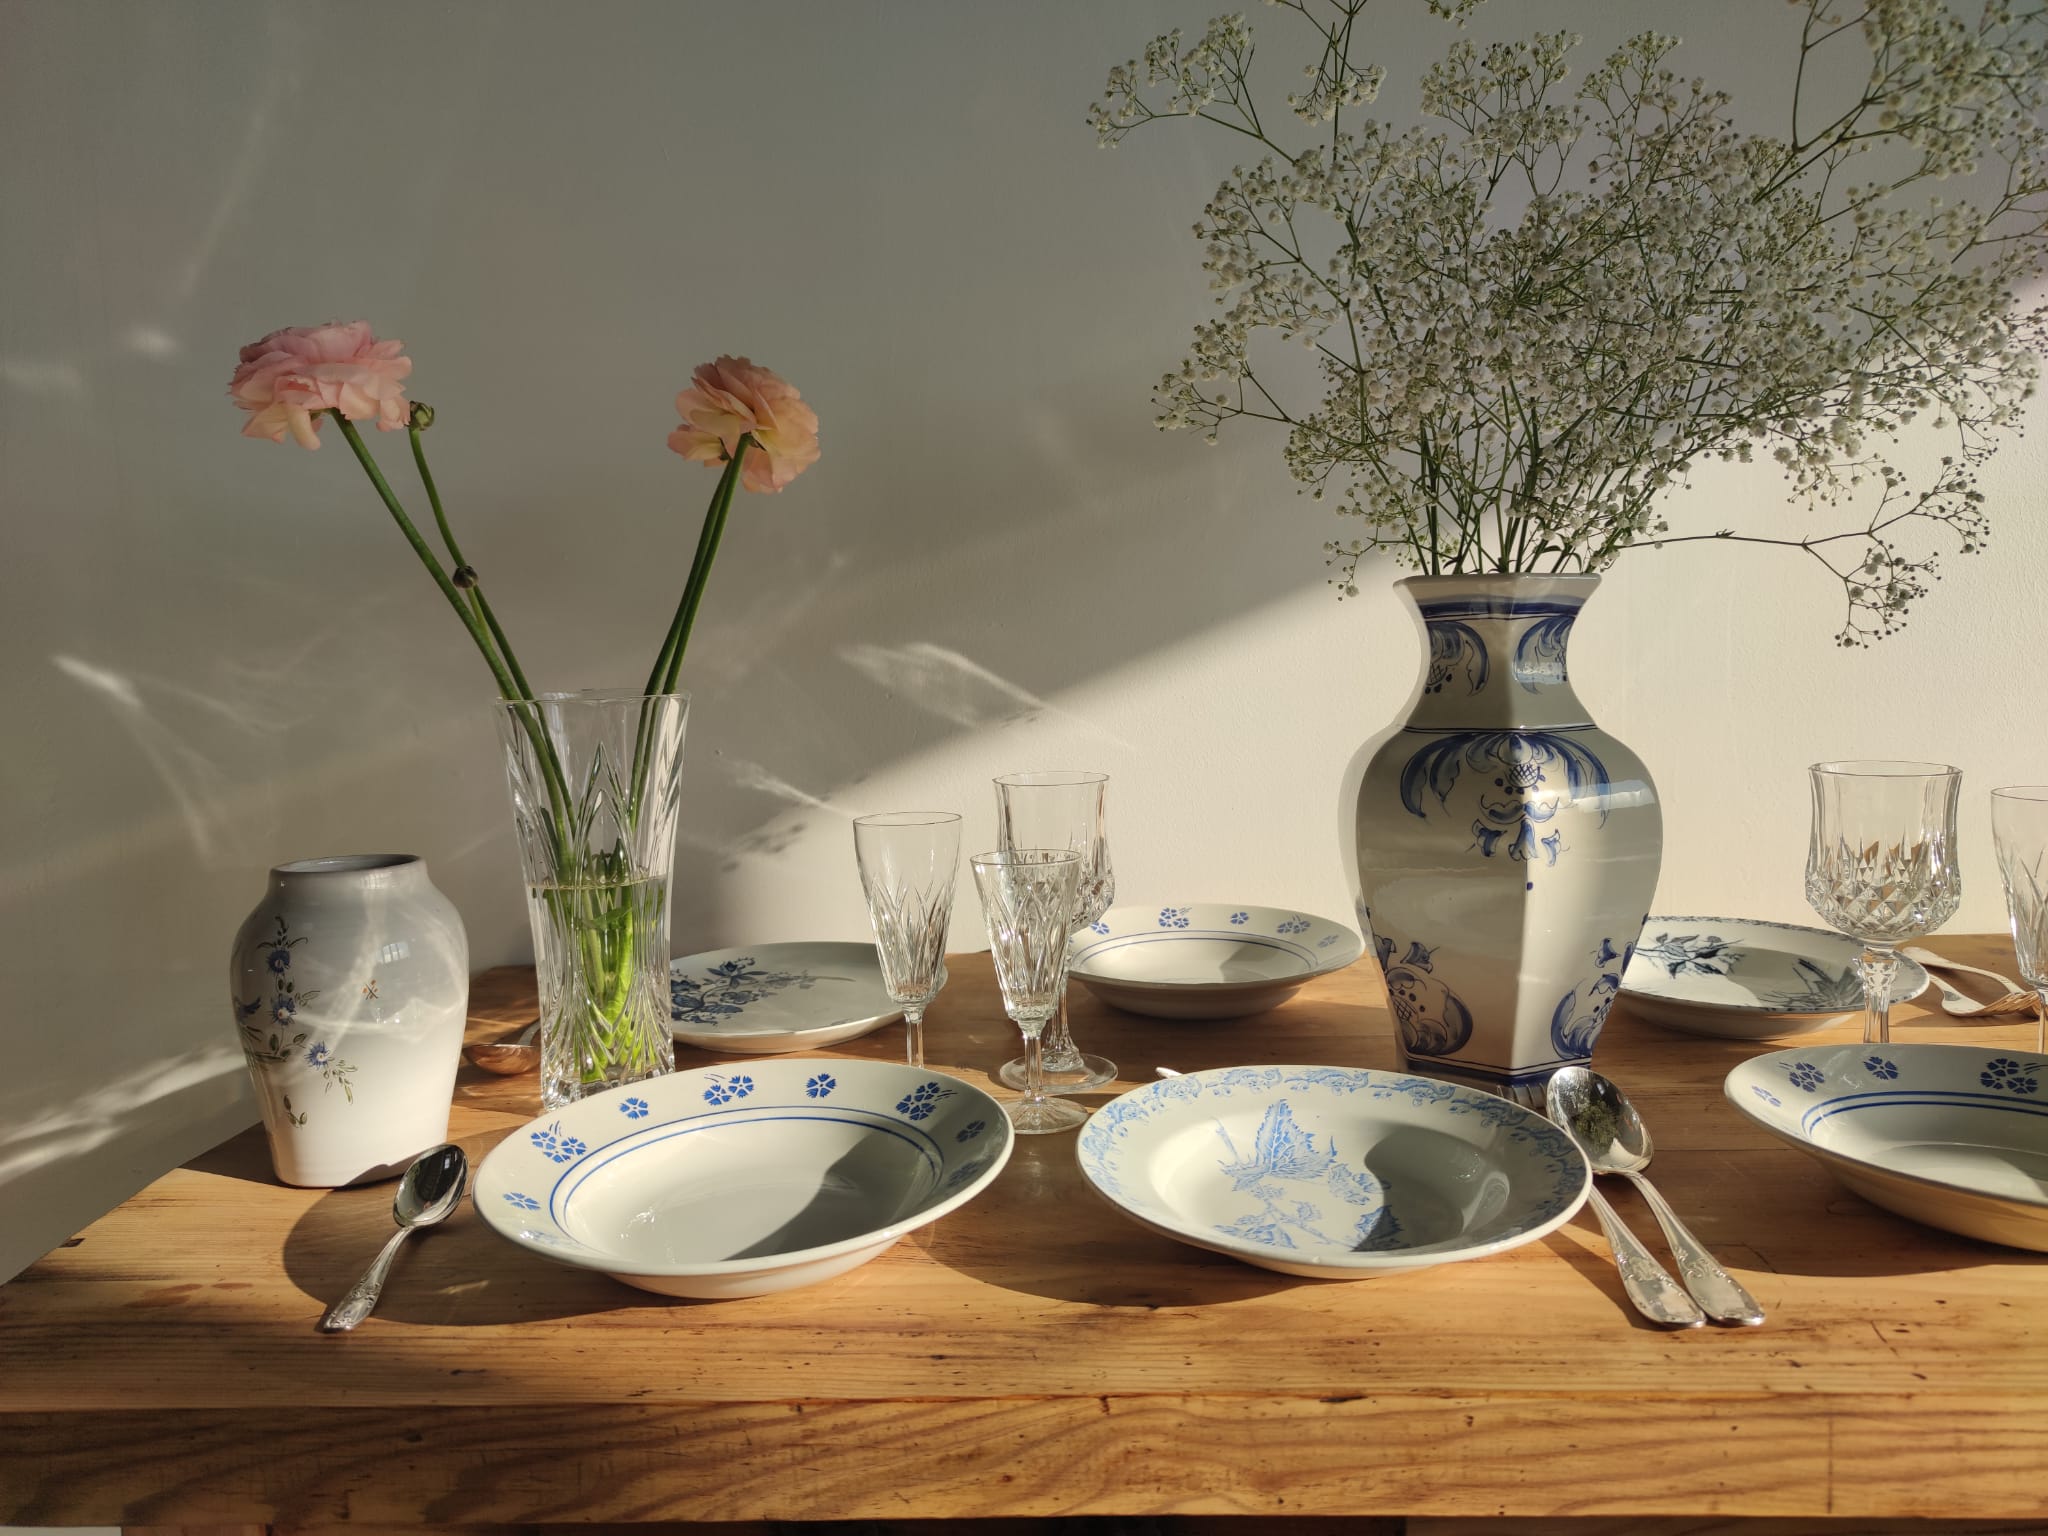 Lot de 8 assiettes creuses Lunéville modèle Danièle à décor floral bleu